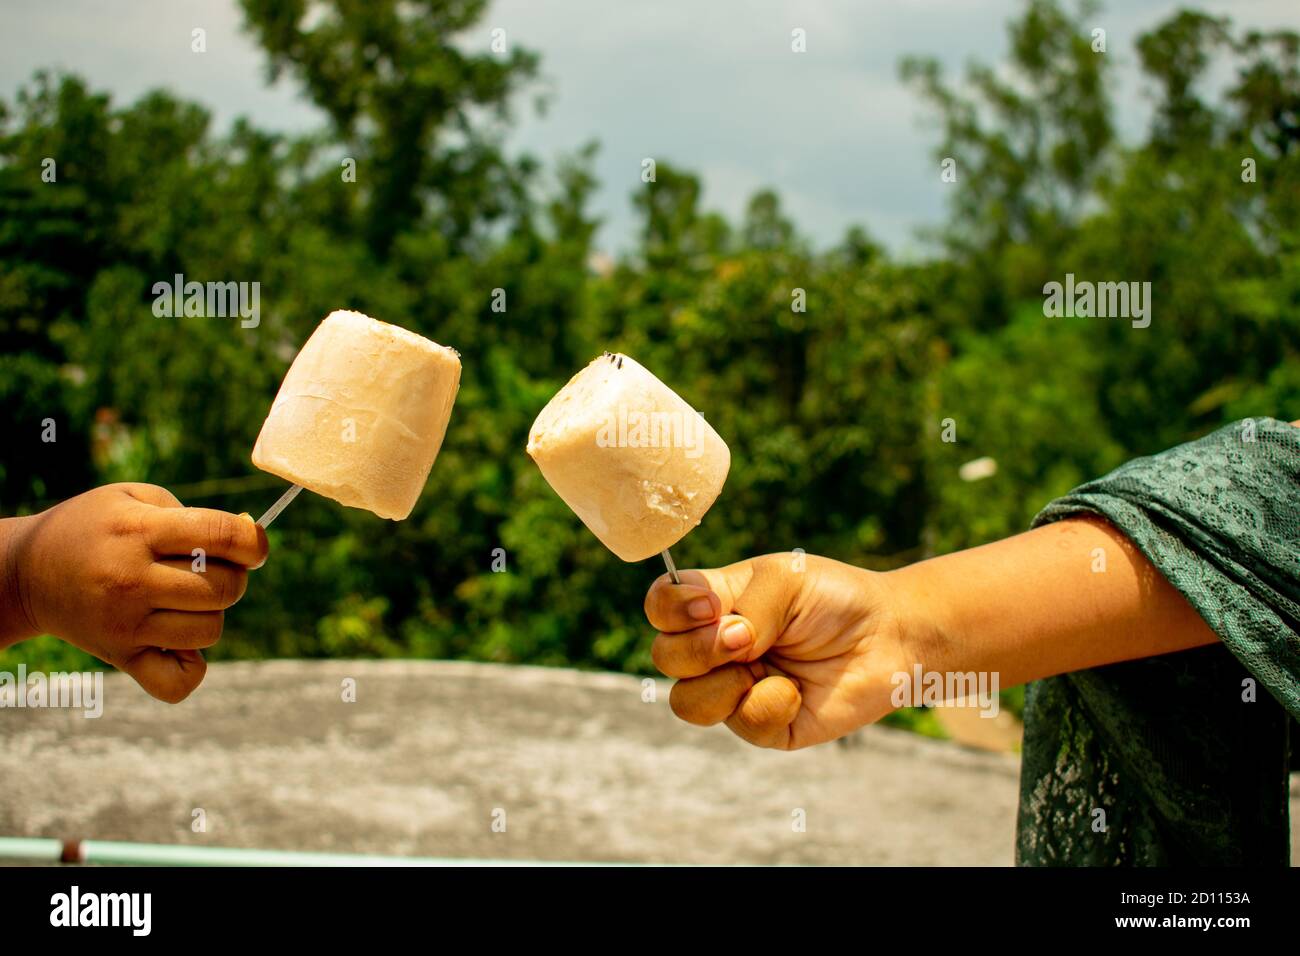 Kinder halten hausgemachtes Eis von der Hand in einem Grüne Umgebung unter wolkenblauem Himmel an einem Sommertag Natürlicher Hintergrund Stockfoto